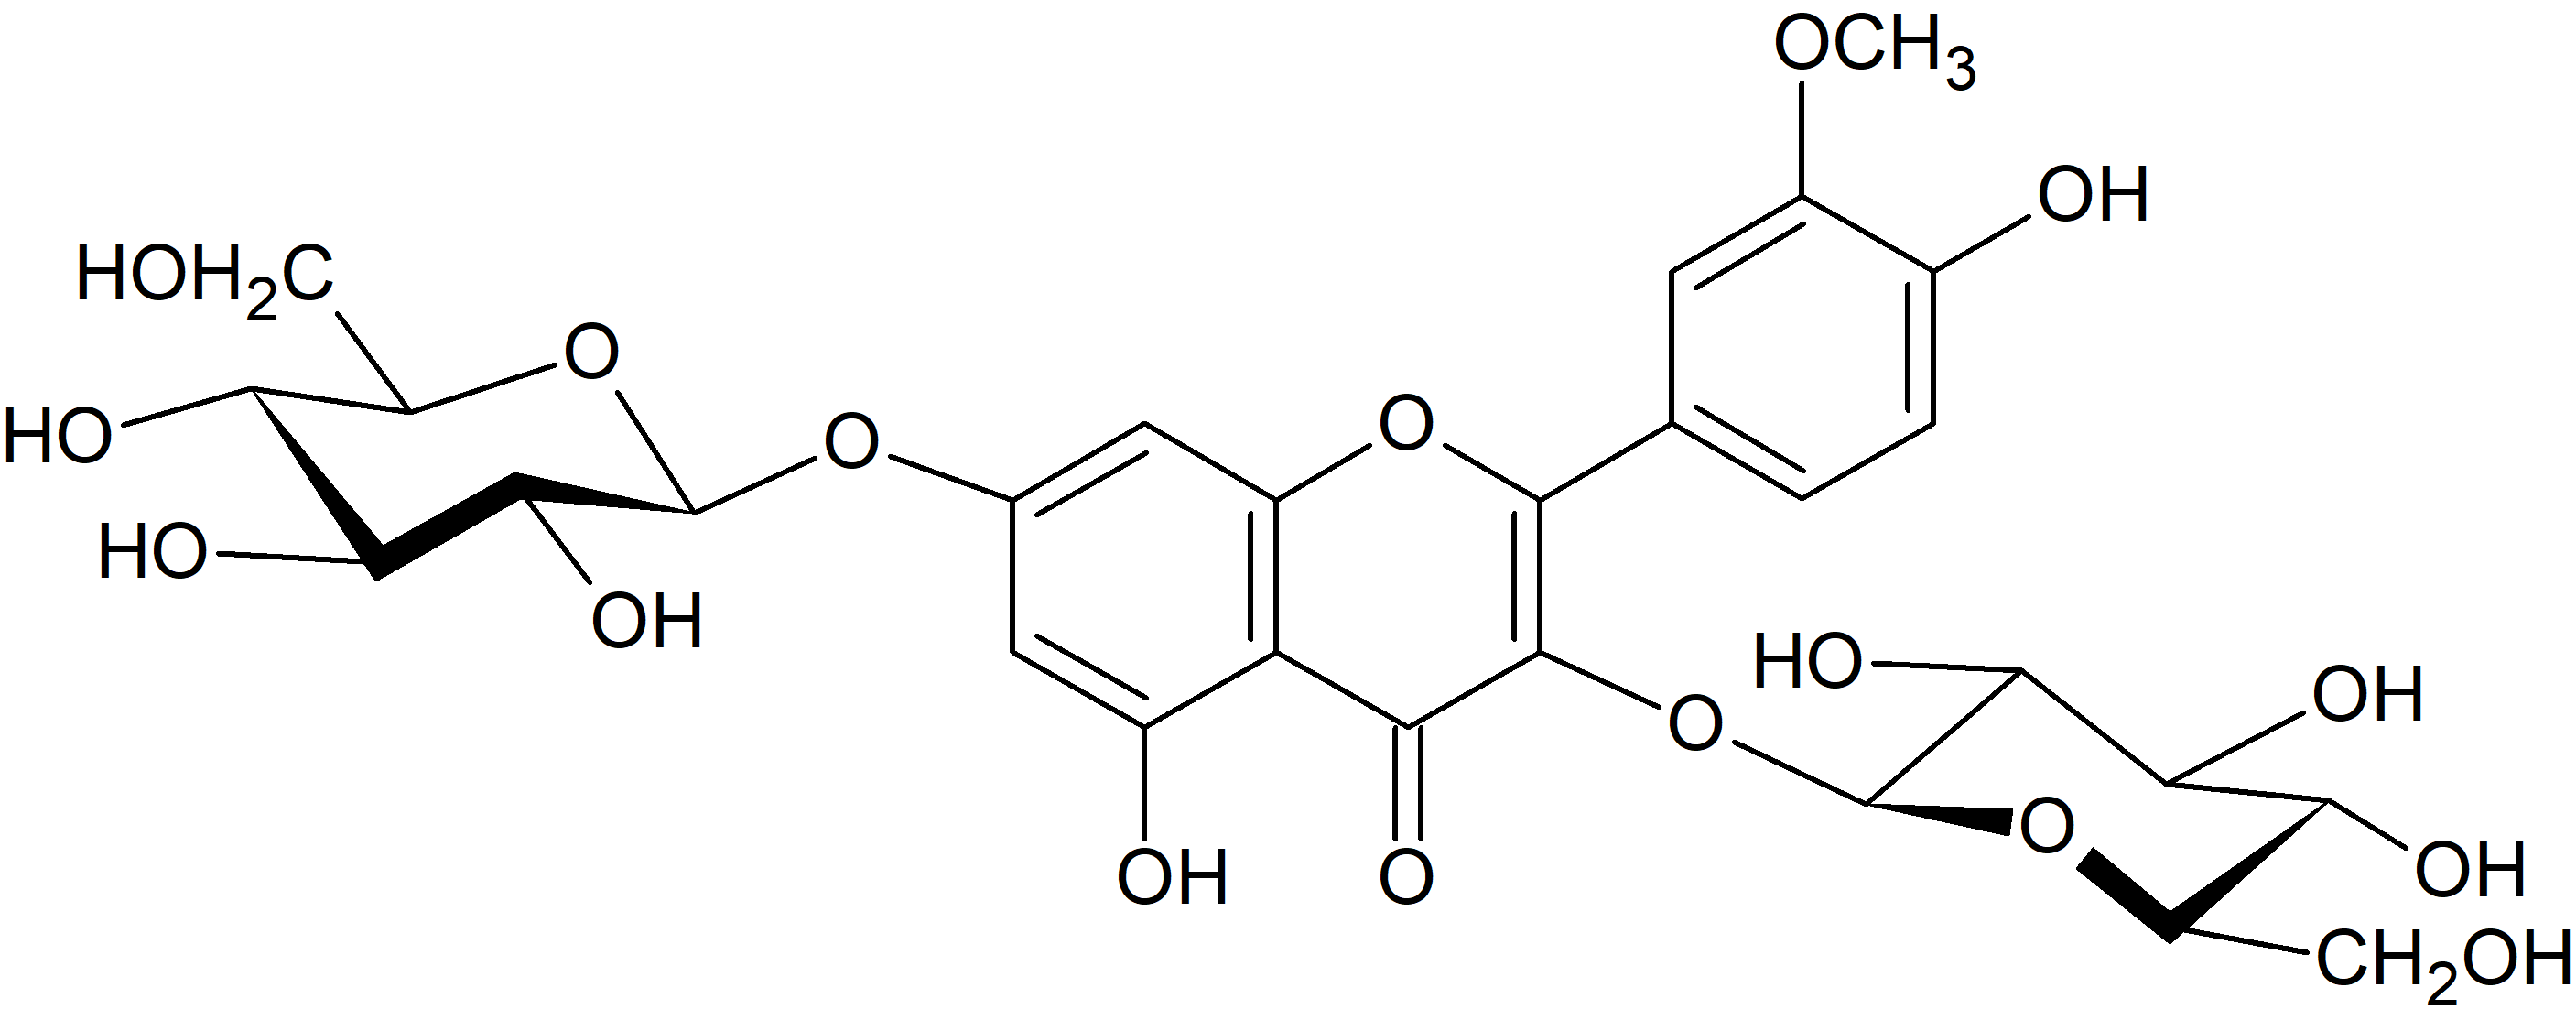 Isorhamnetin 3,7-di-O-glucoside